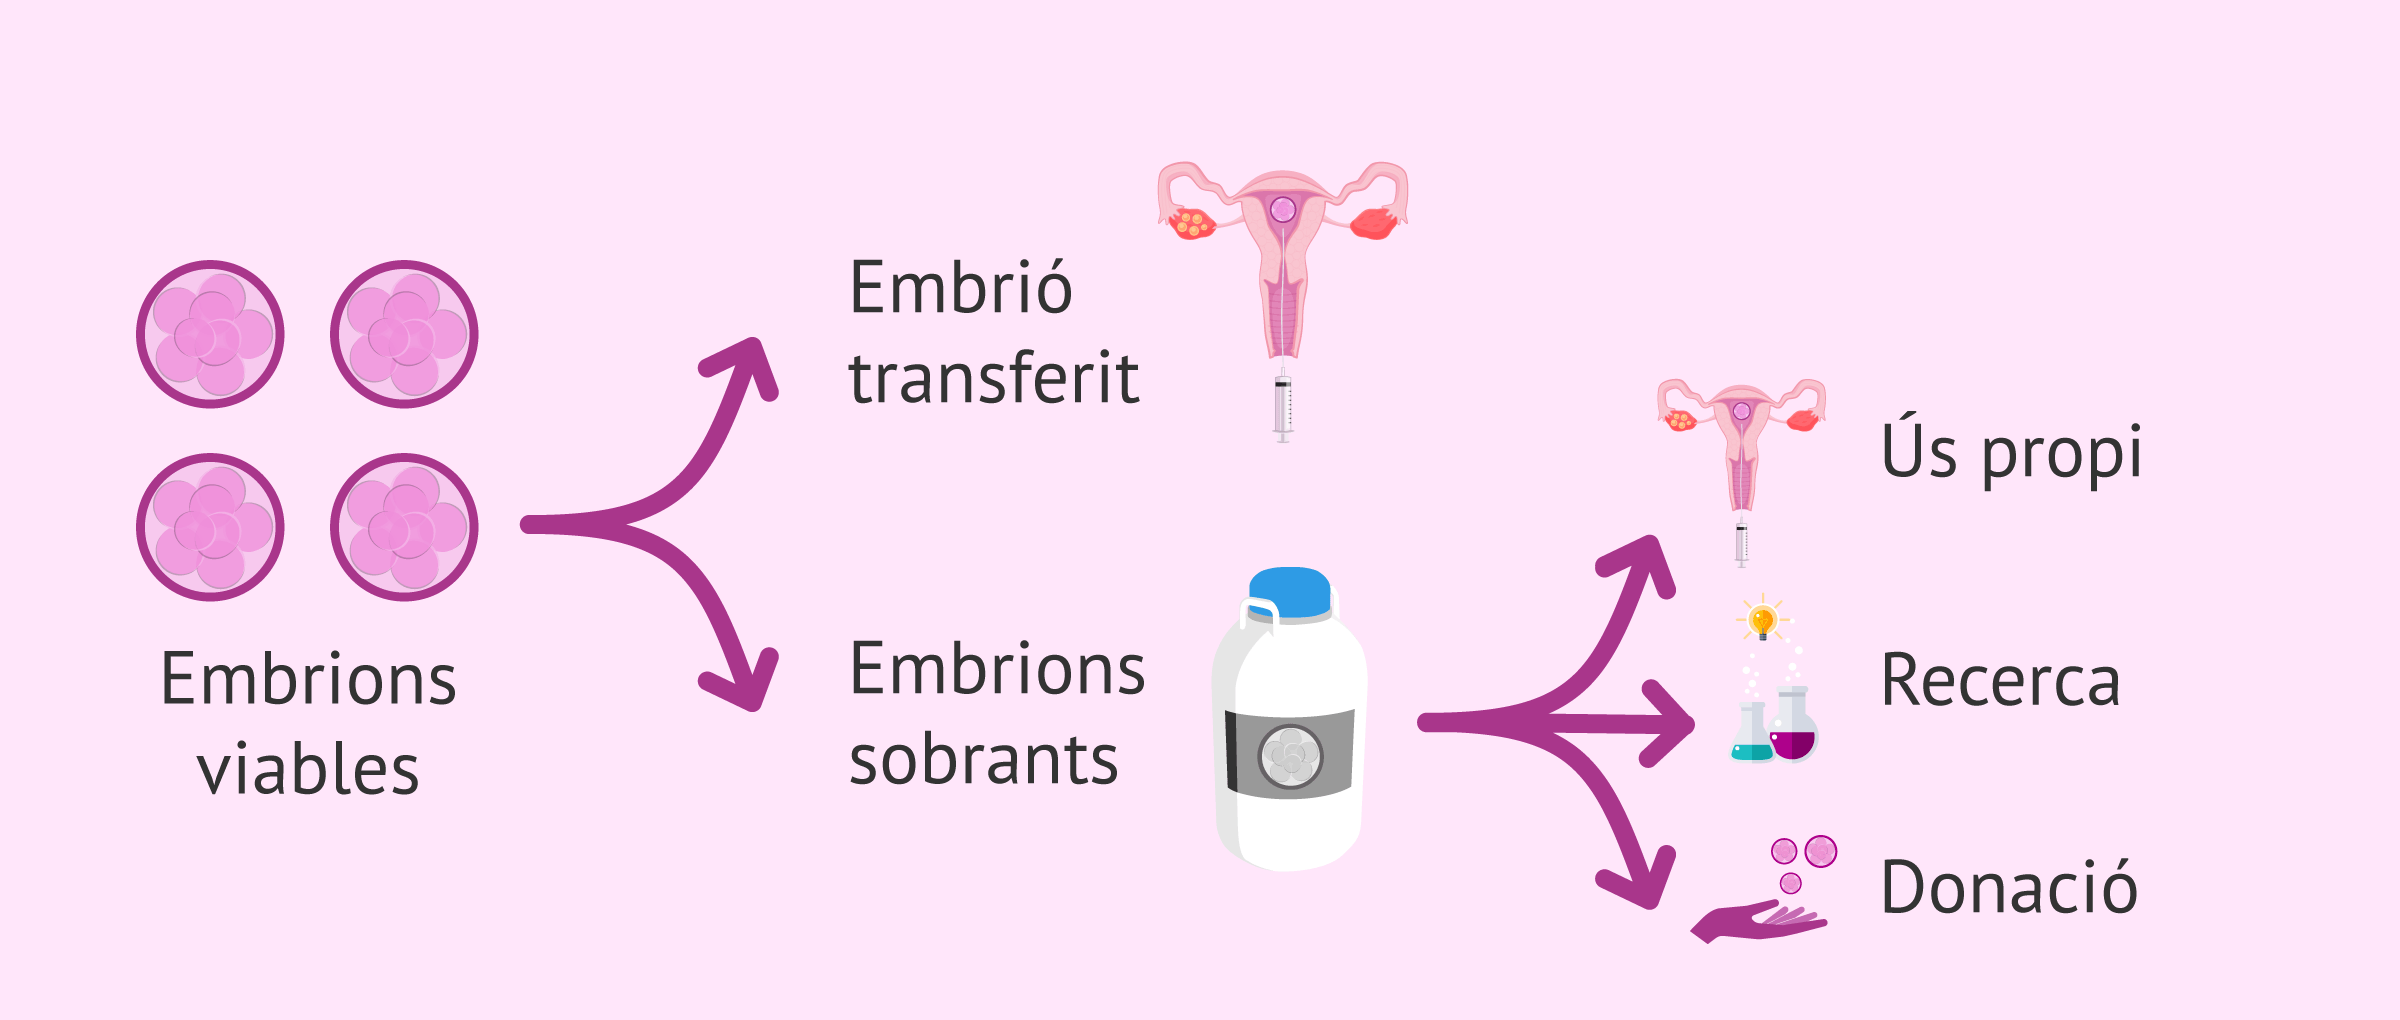 Opcions per als embrions viables d'una FIV